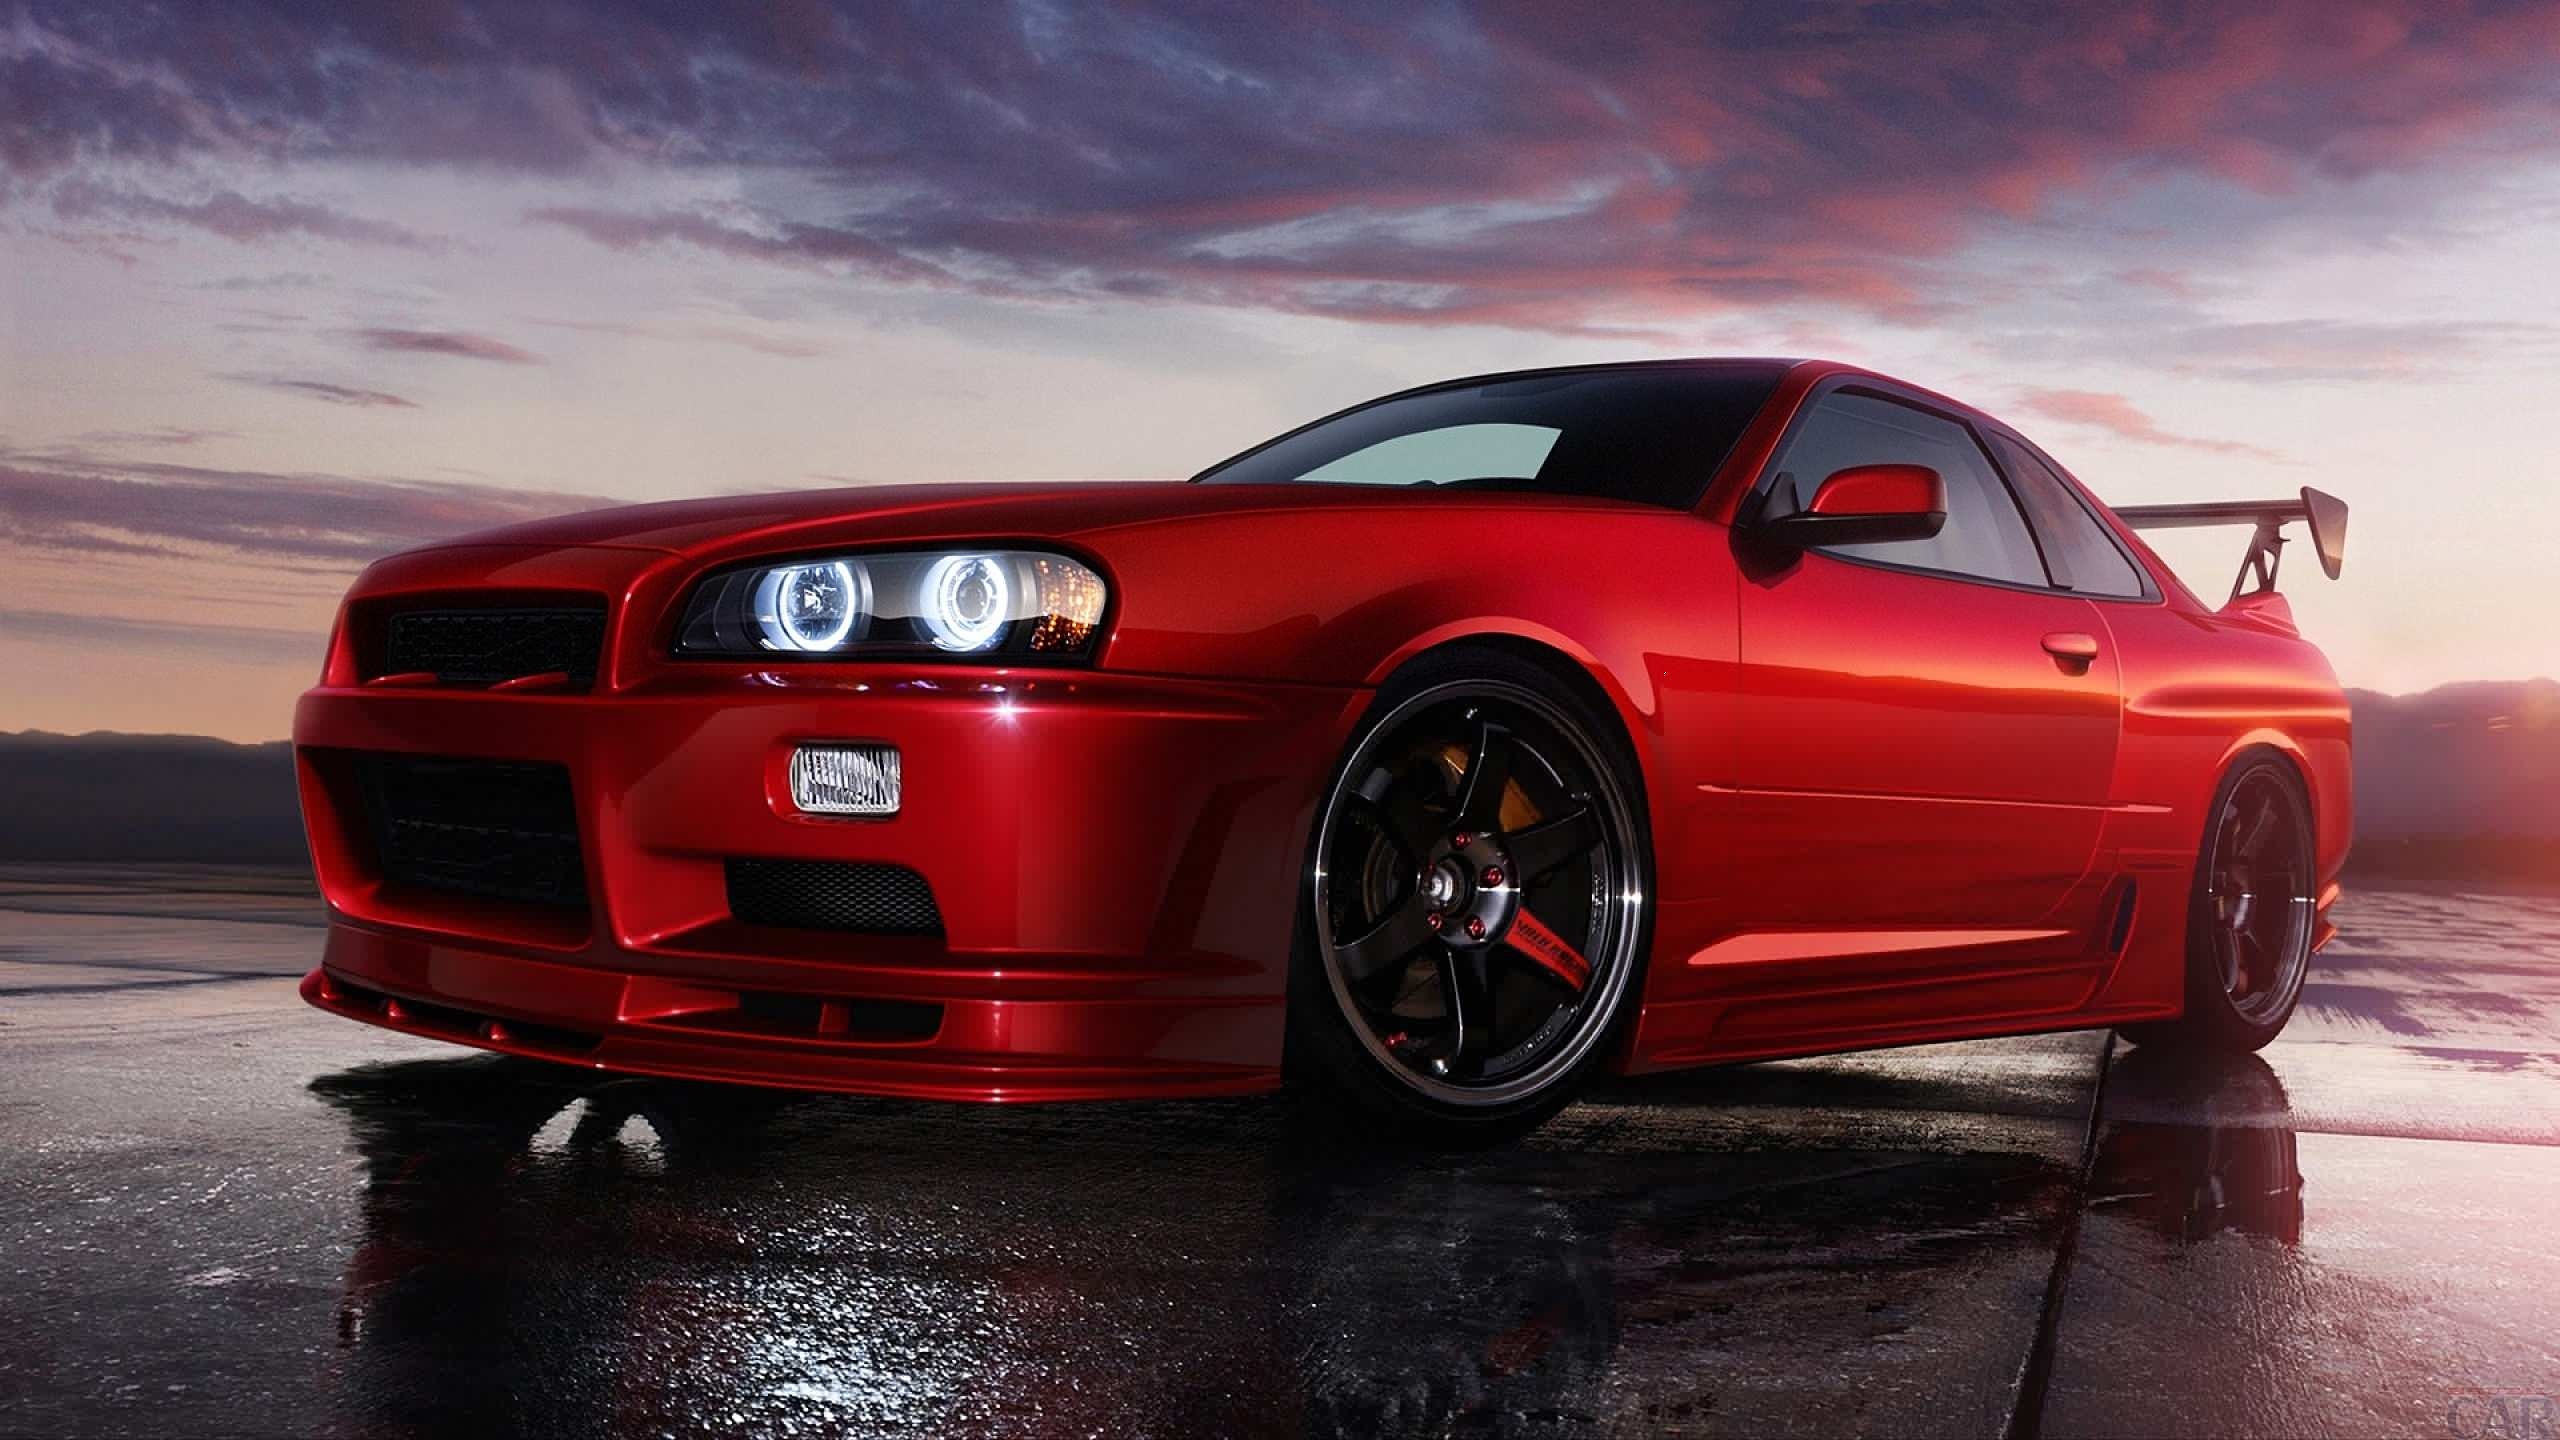 Nissan Skyline R34, Red car, Stunning wallpapers, Desktop beautification, 2560x1440 HD Desktop